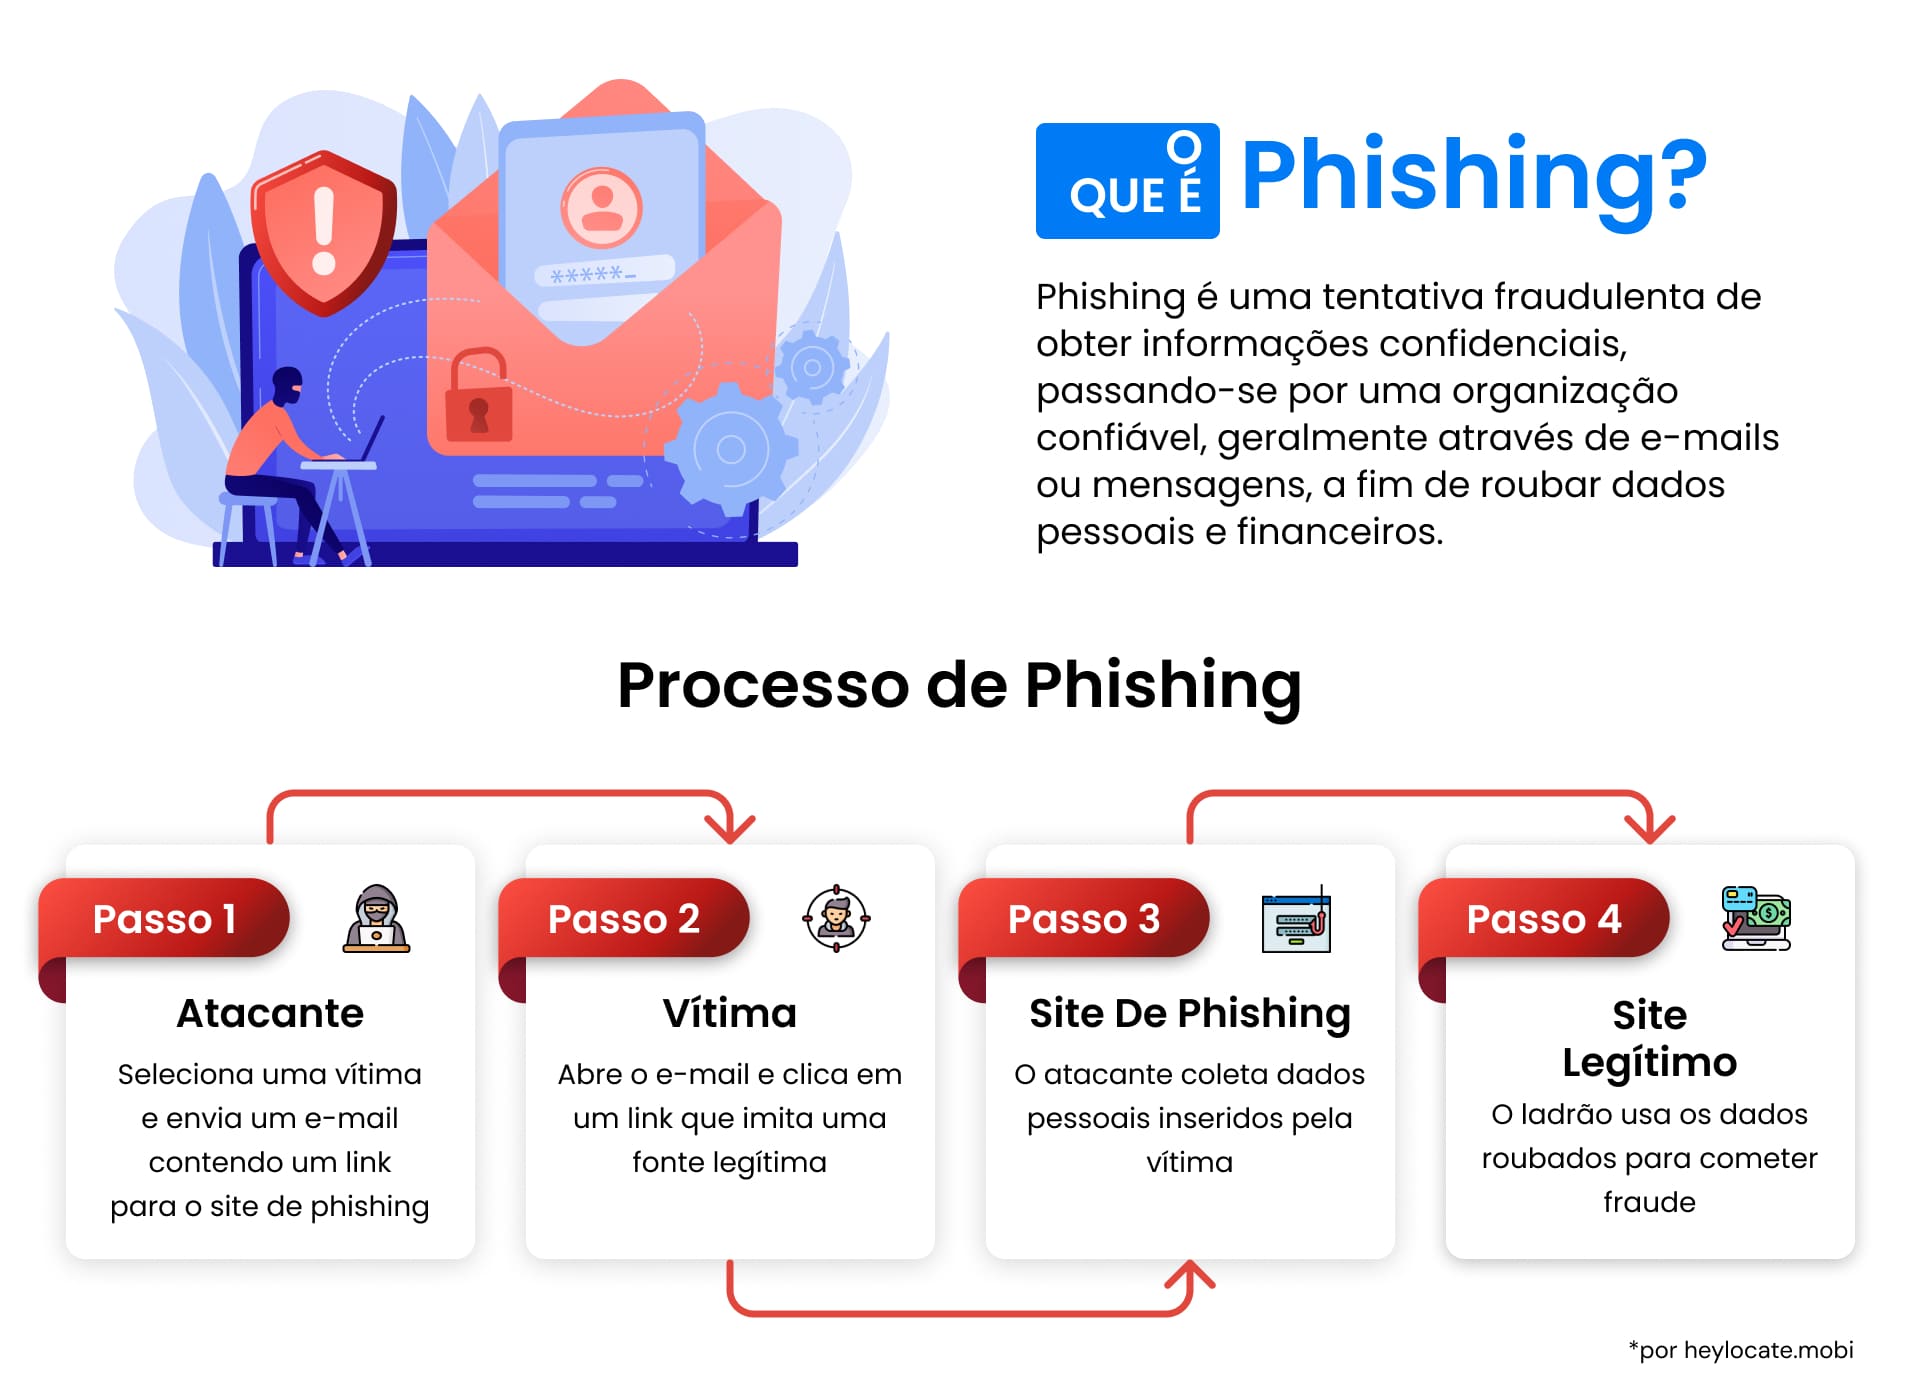 Um infográfico que descreve o que é phishing e um detalhamento passo a passo de como um ataque de phishing se desenvolve, desde a perspectiva do invasor até as ações da vítima.